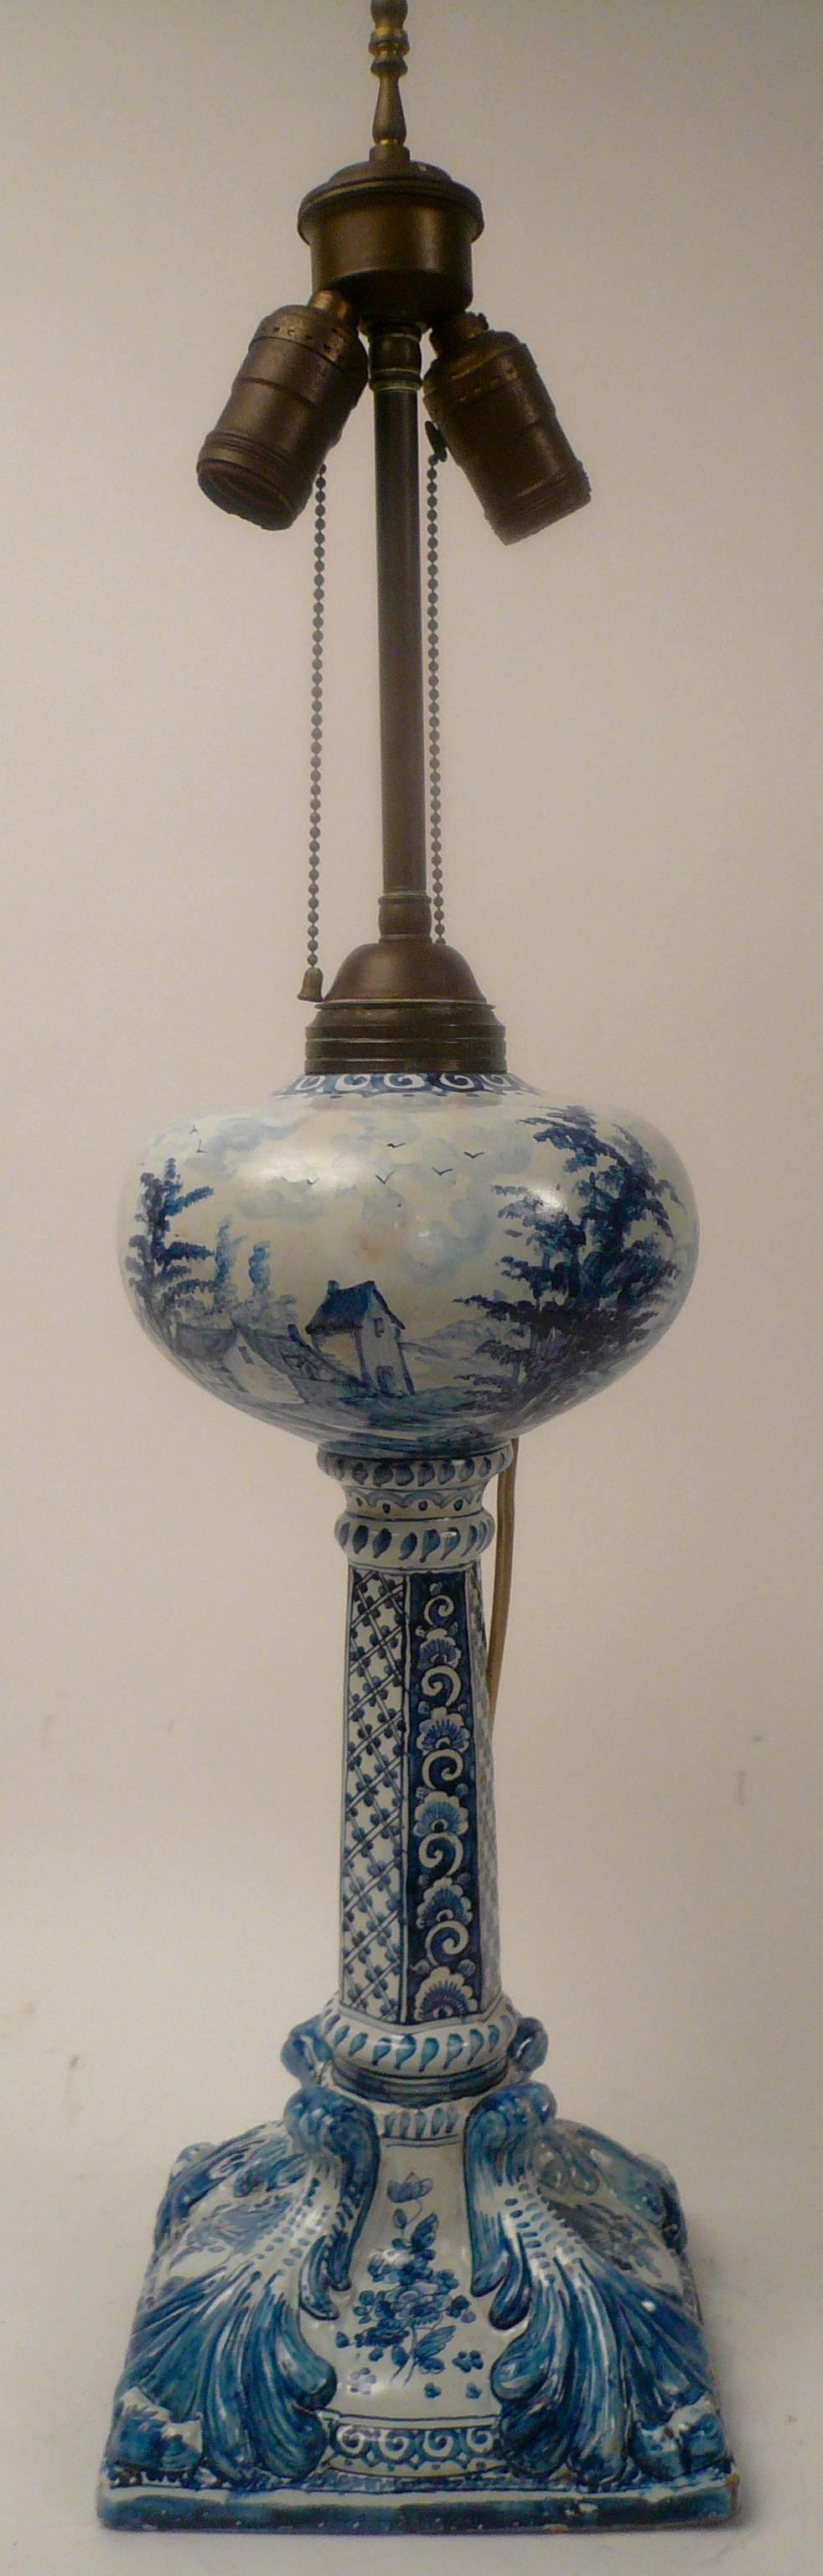 Rococo Revival 19th Century Delft Oil Lamp